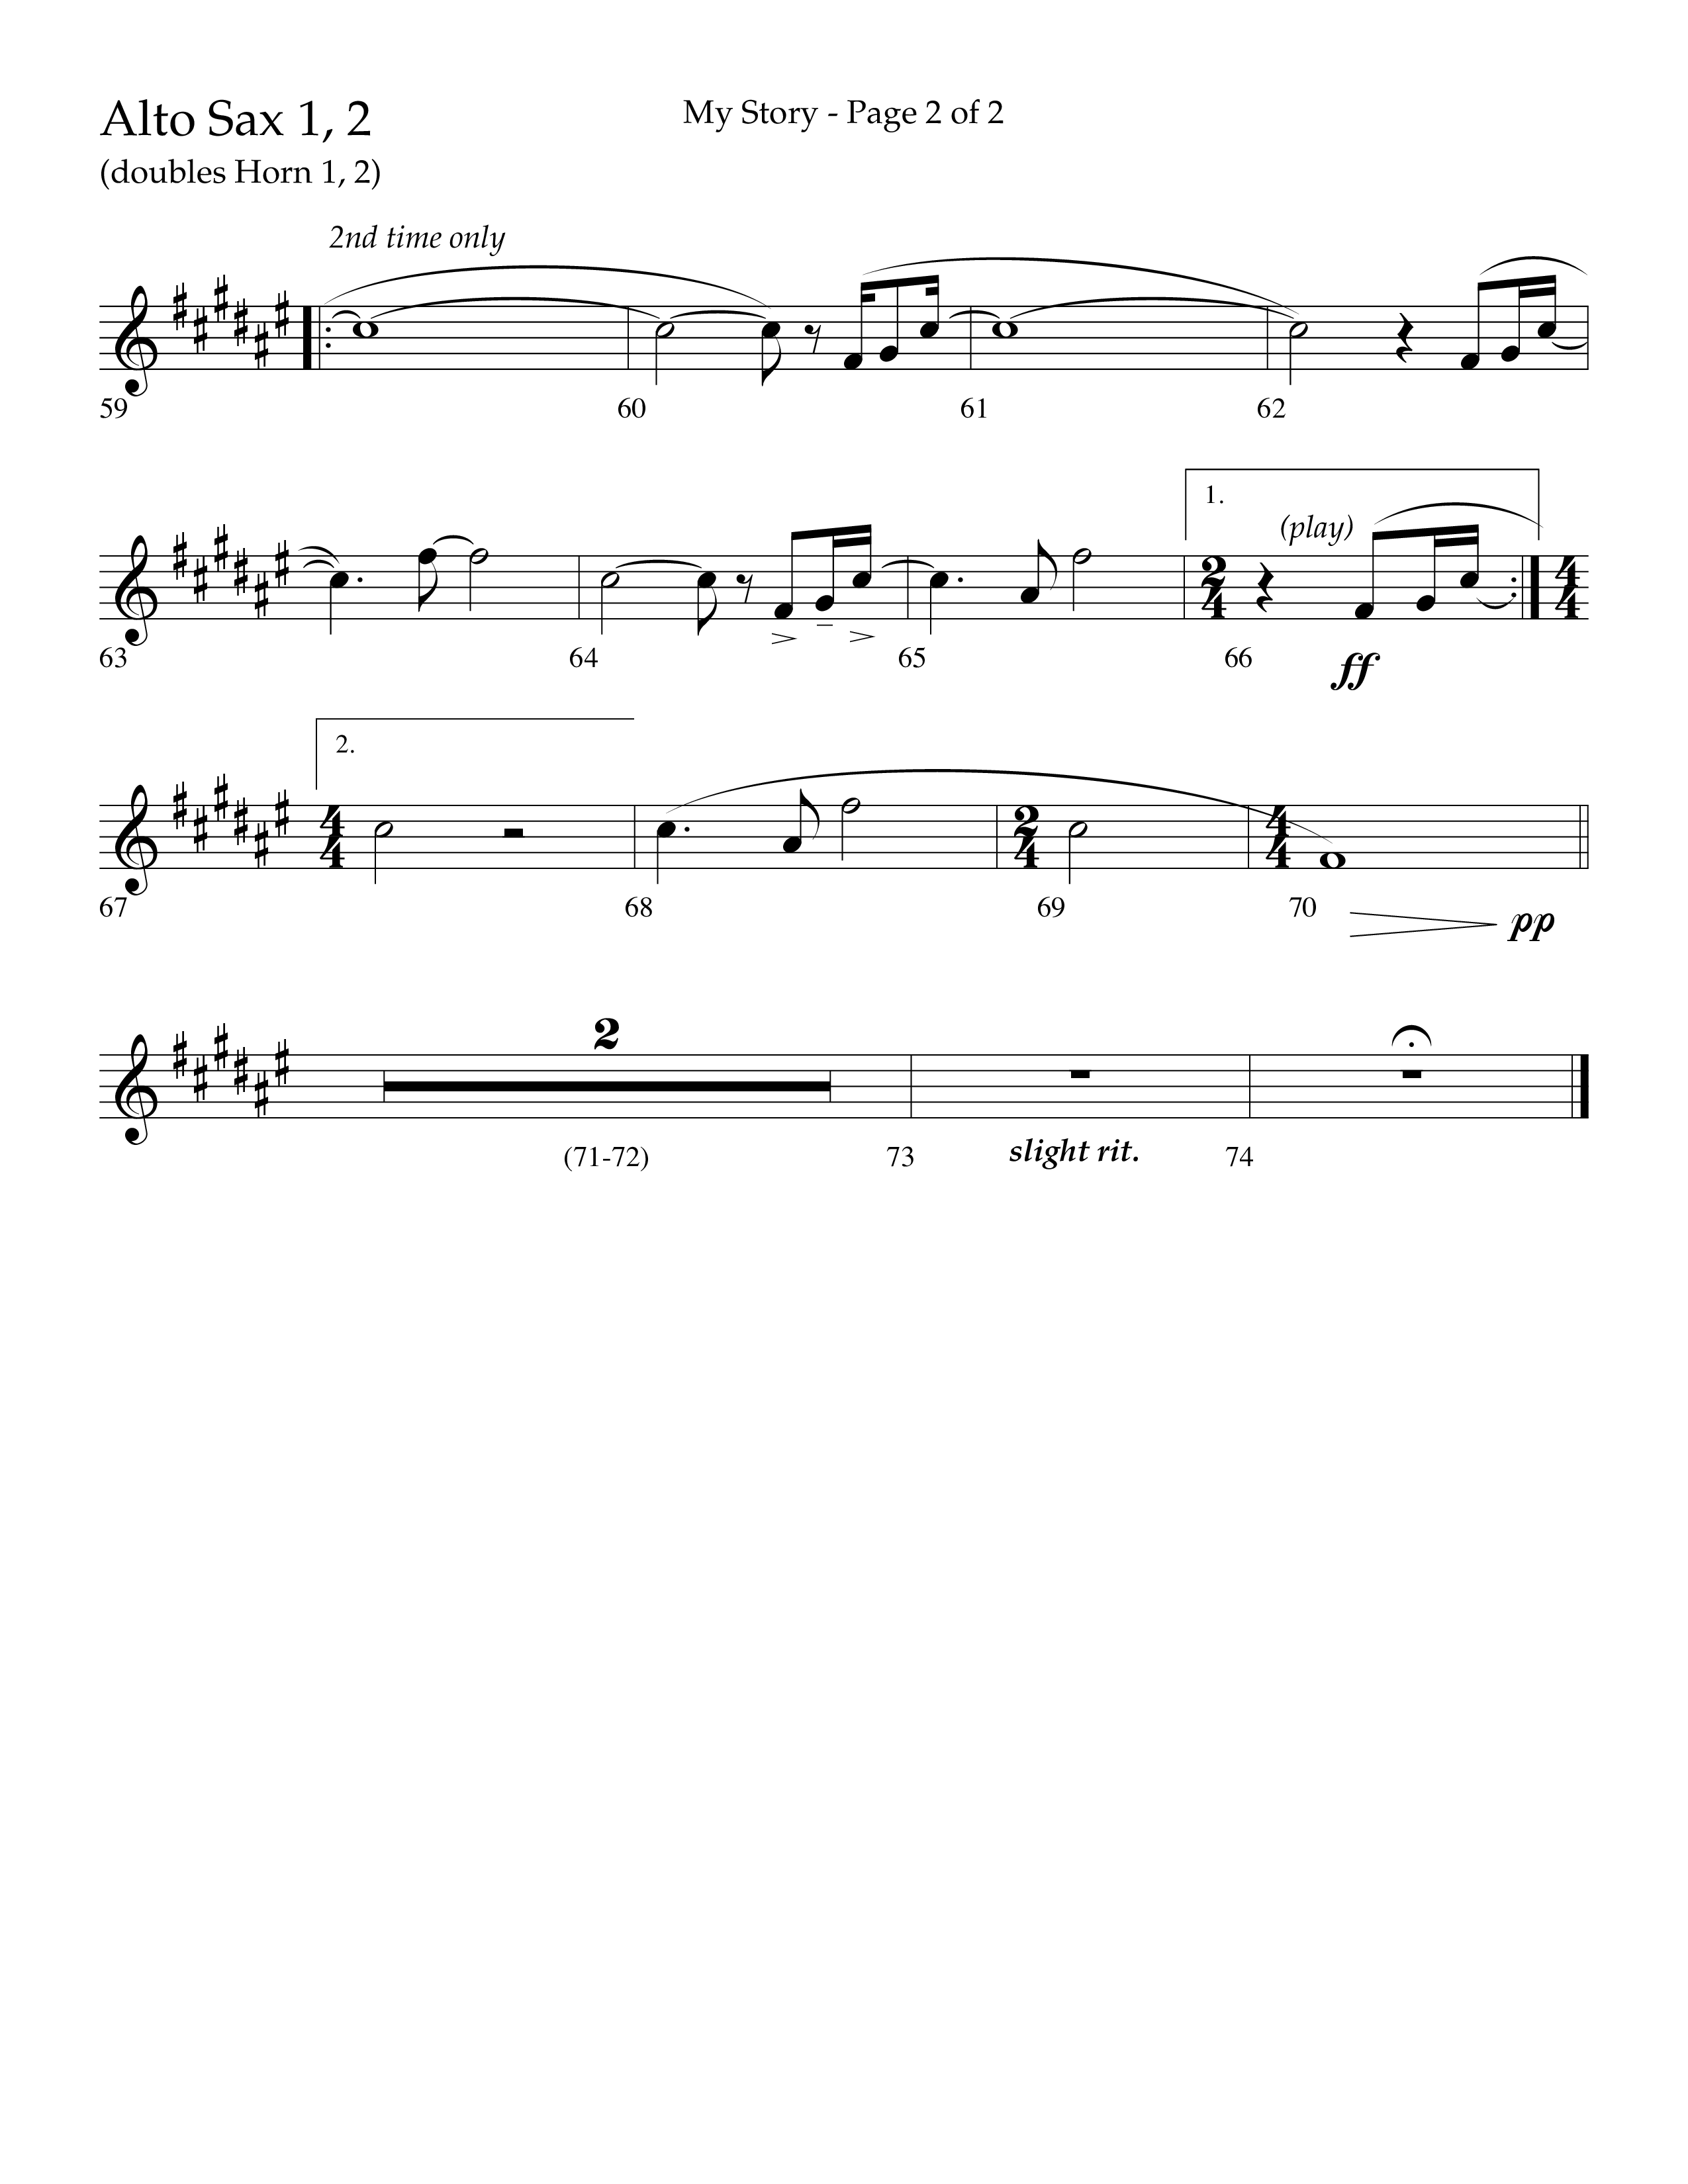 My Story (Choral Anthem SATB) Alto Sax 1/2 (Lifeway Choral / Arr. Craig Adams)